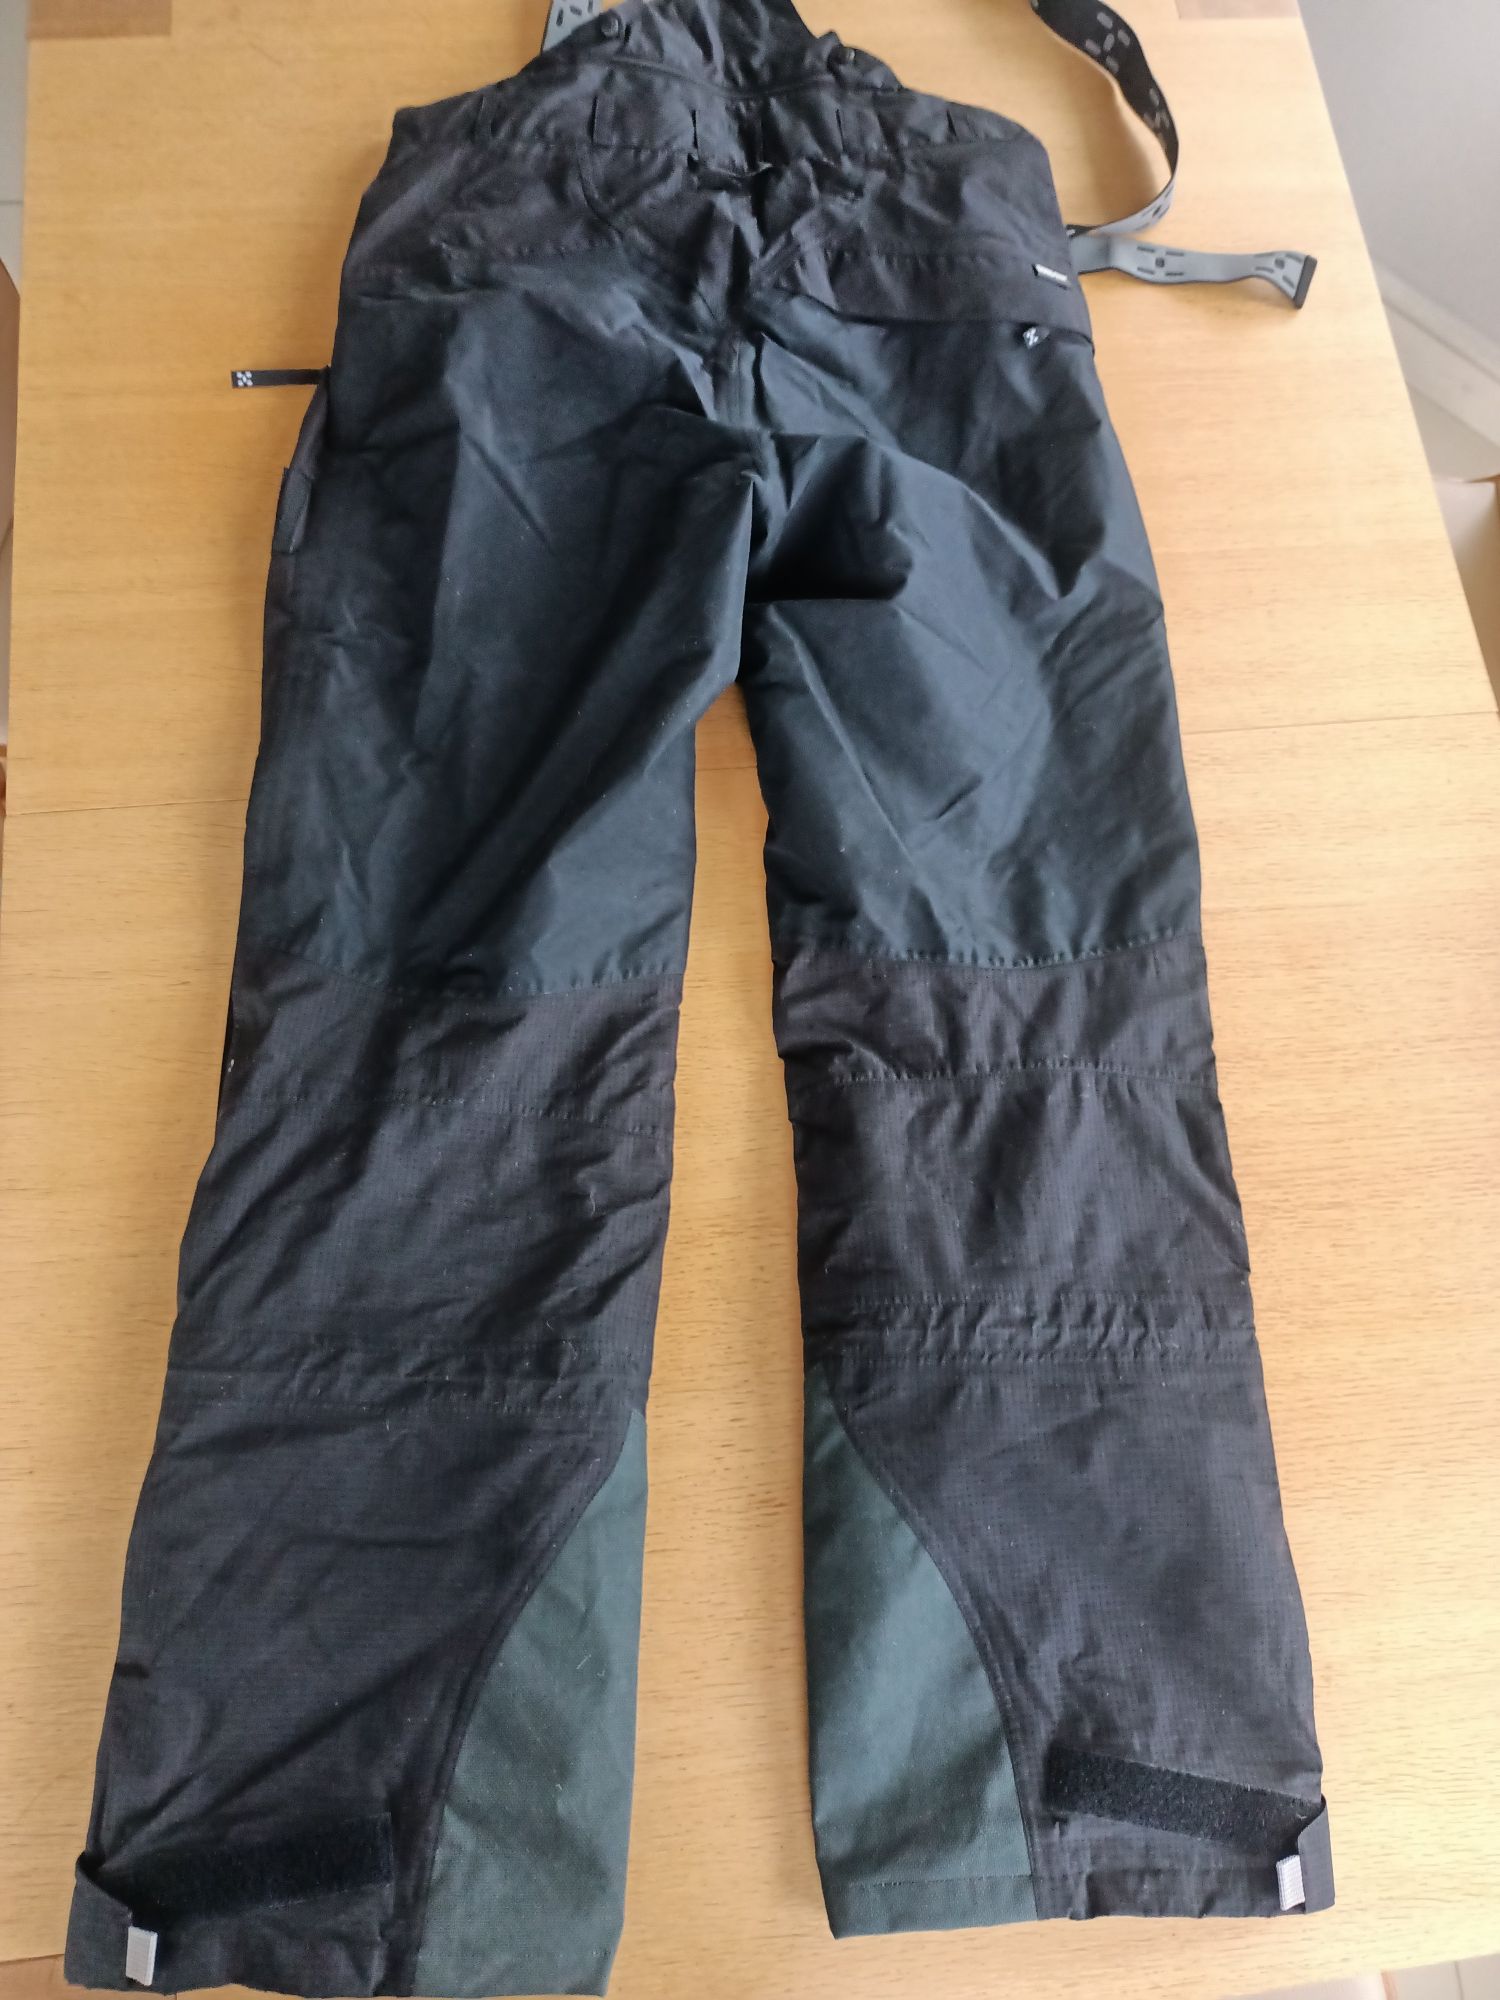 Spodnie narciarskie Haglofs Goretex - XL- nowe